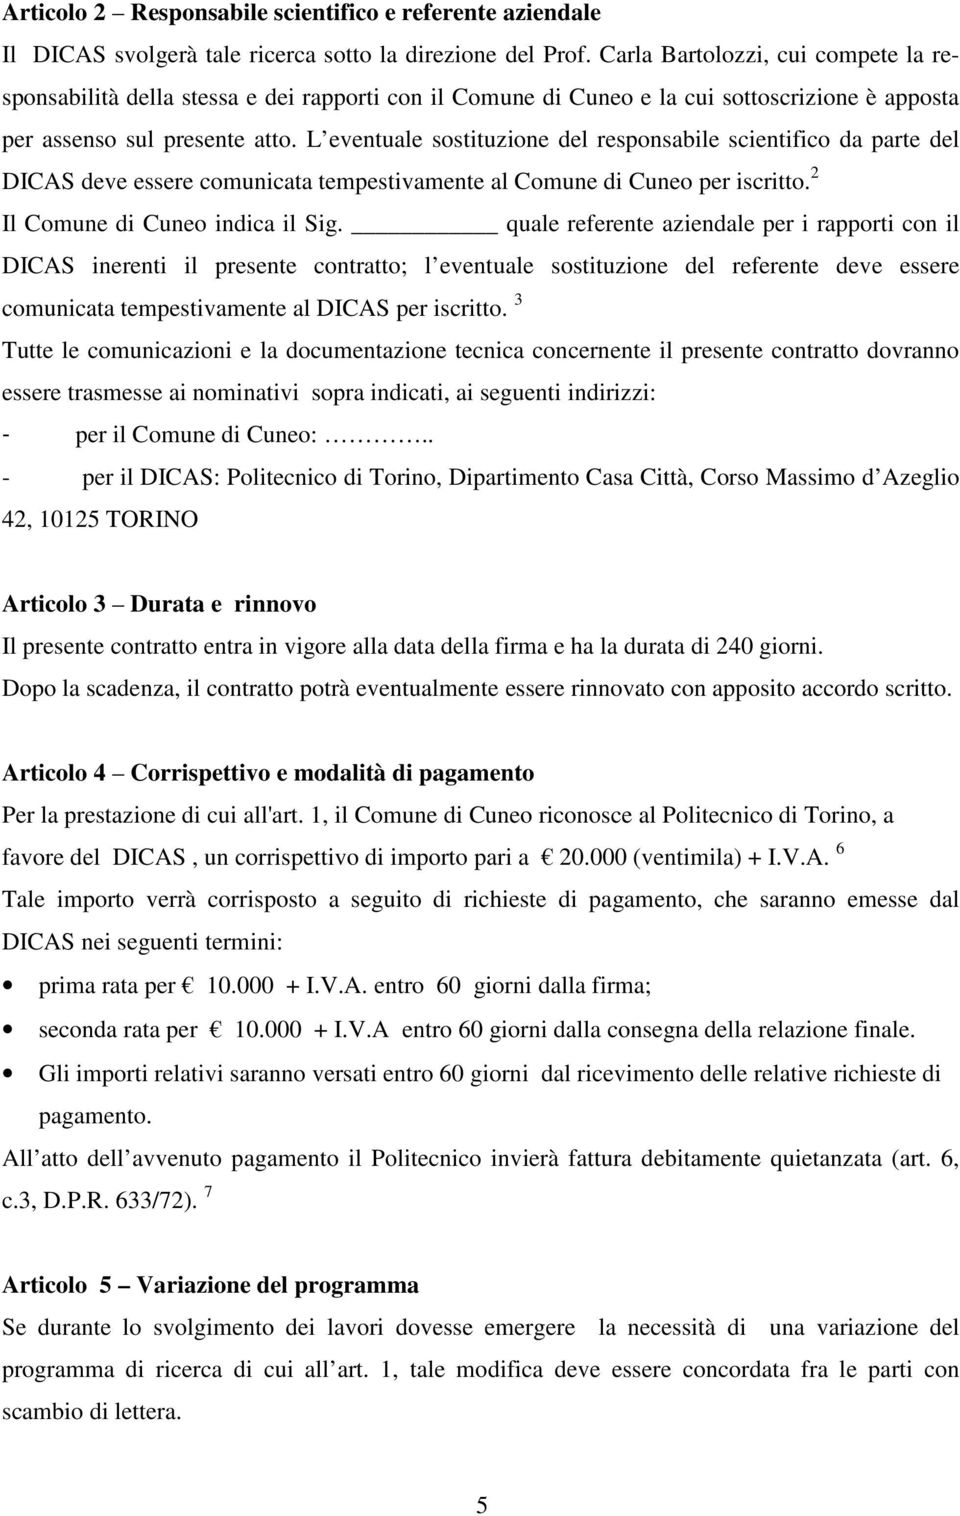 L eventuale sostituzione del responsabile scientifico da parte del DICAS deve essere comunicata tempestivamente al Comune di Cuneo per iscritto. 2 Il Comune di Cuneo indica il Sig.